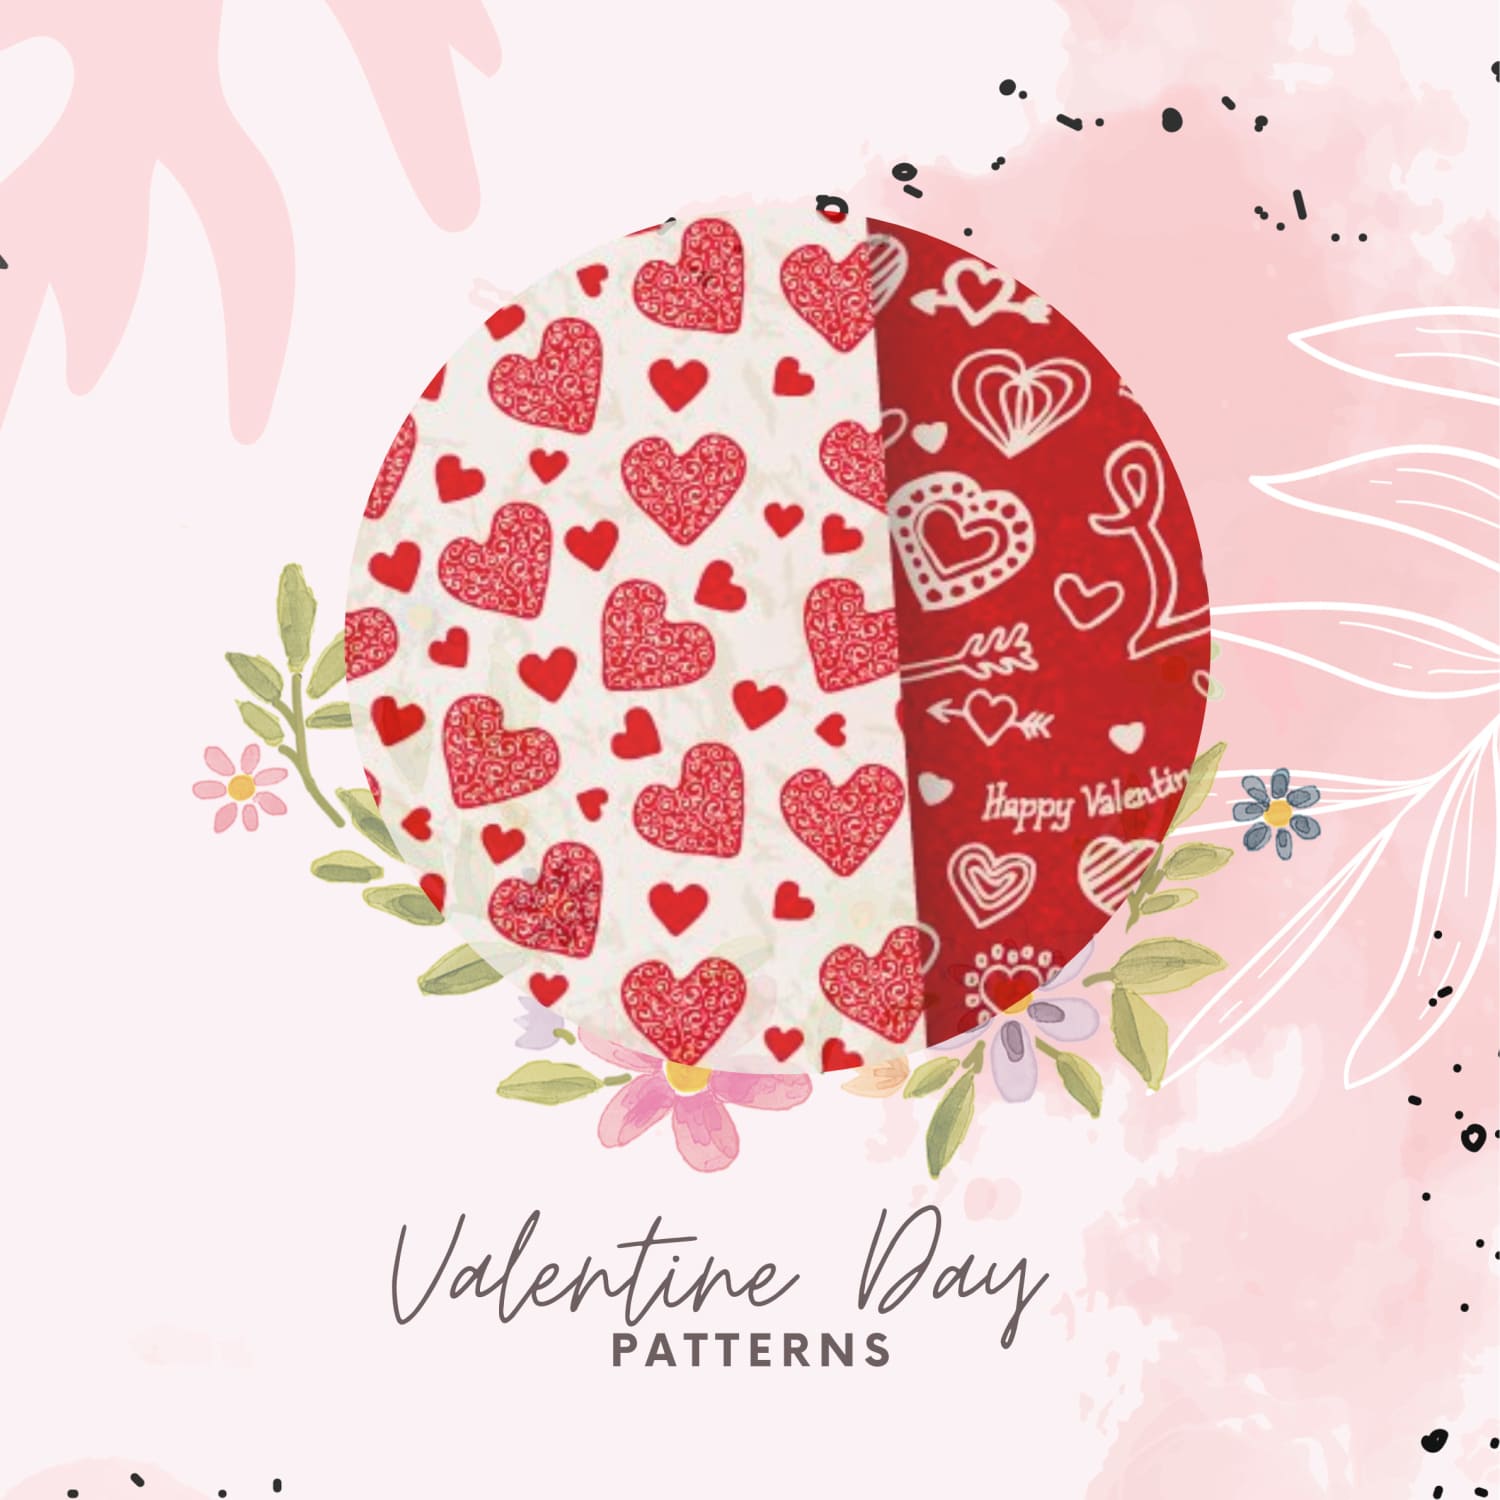 10 Valentine Day Patterns.